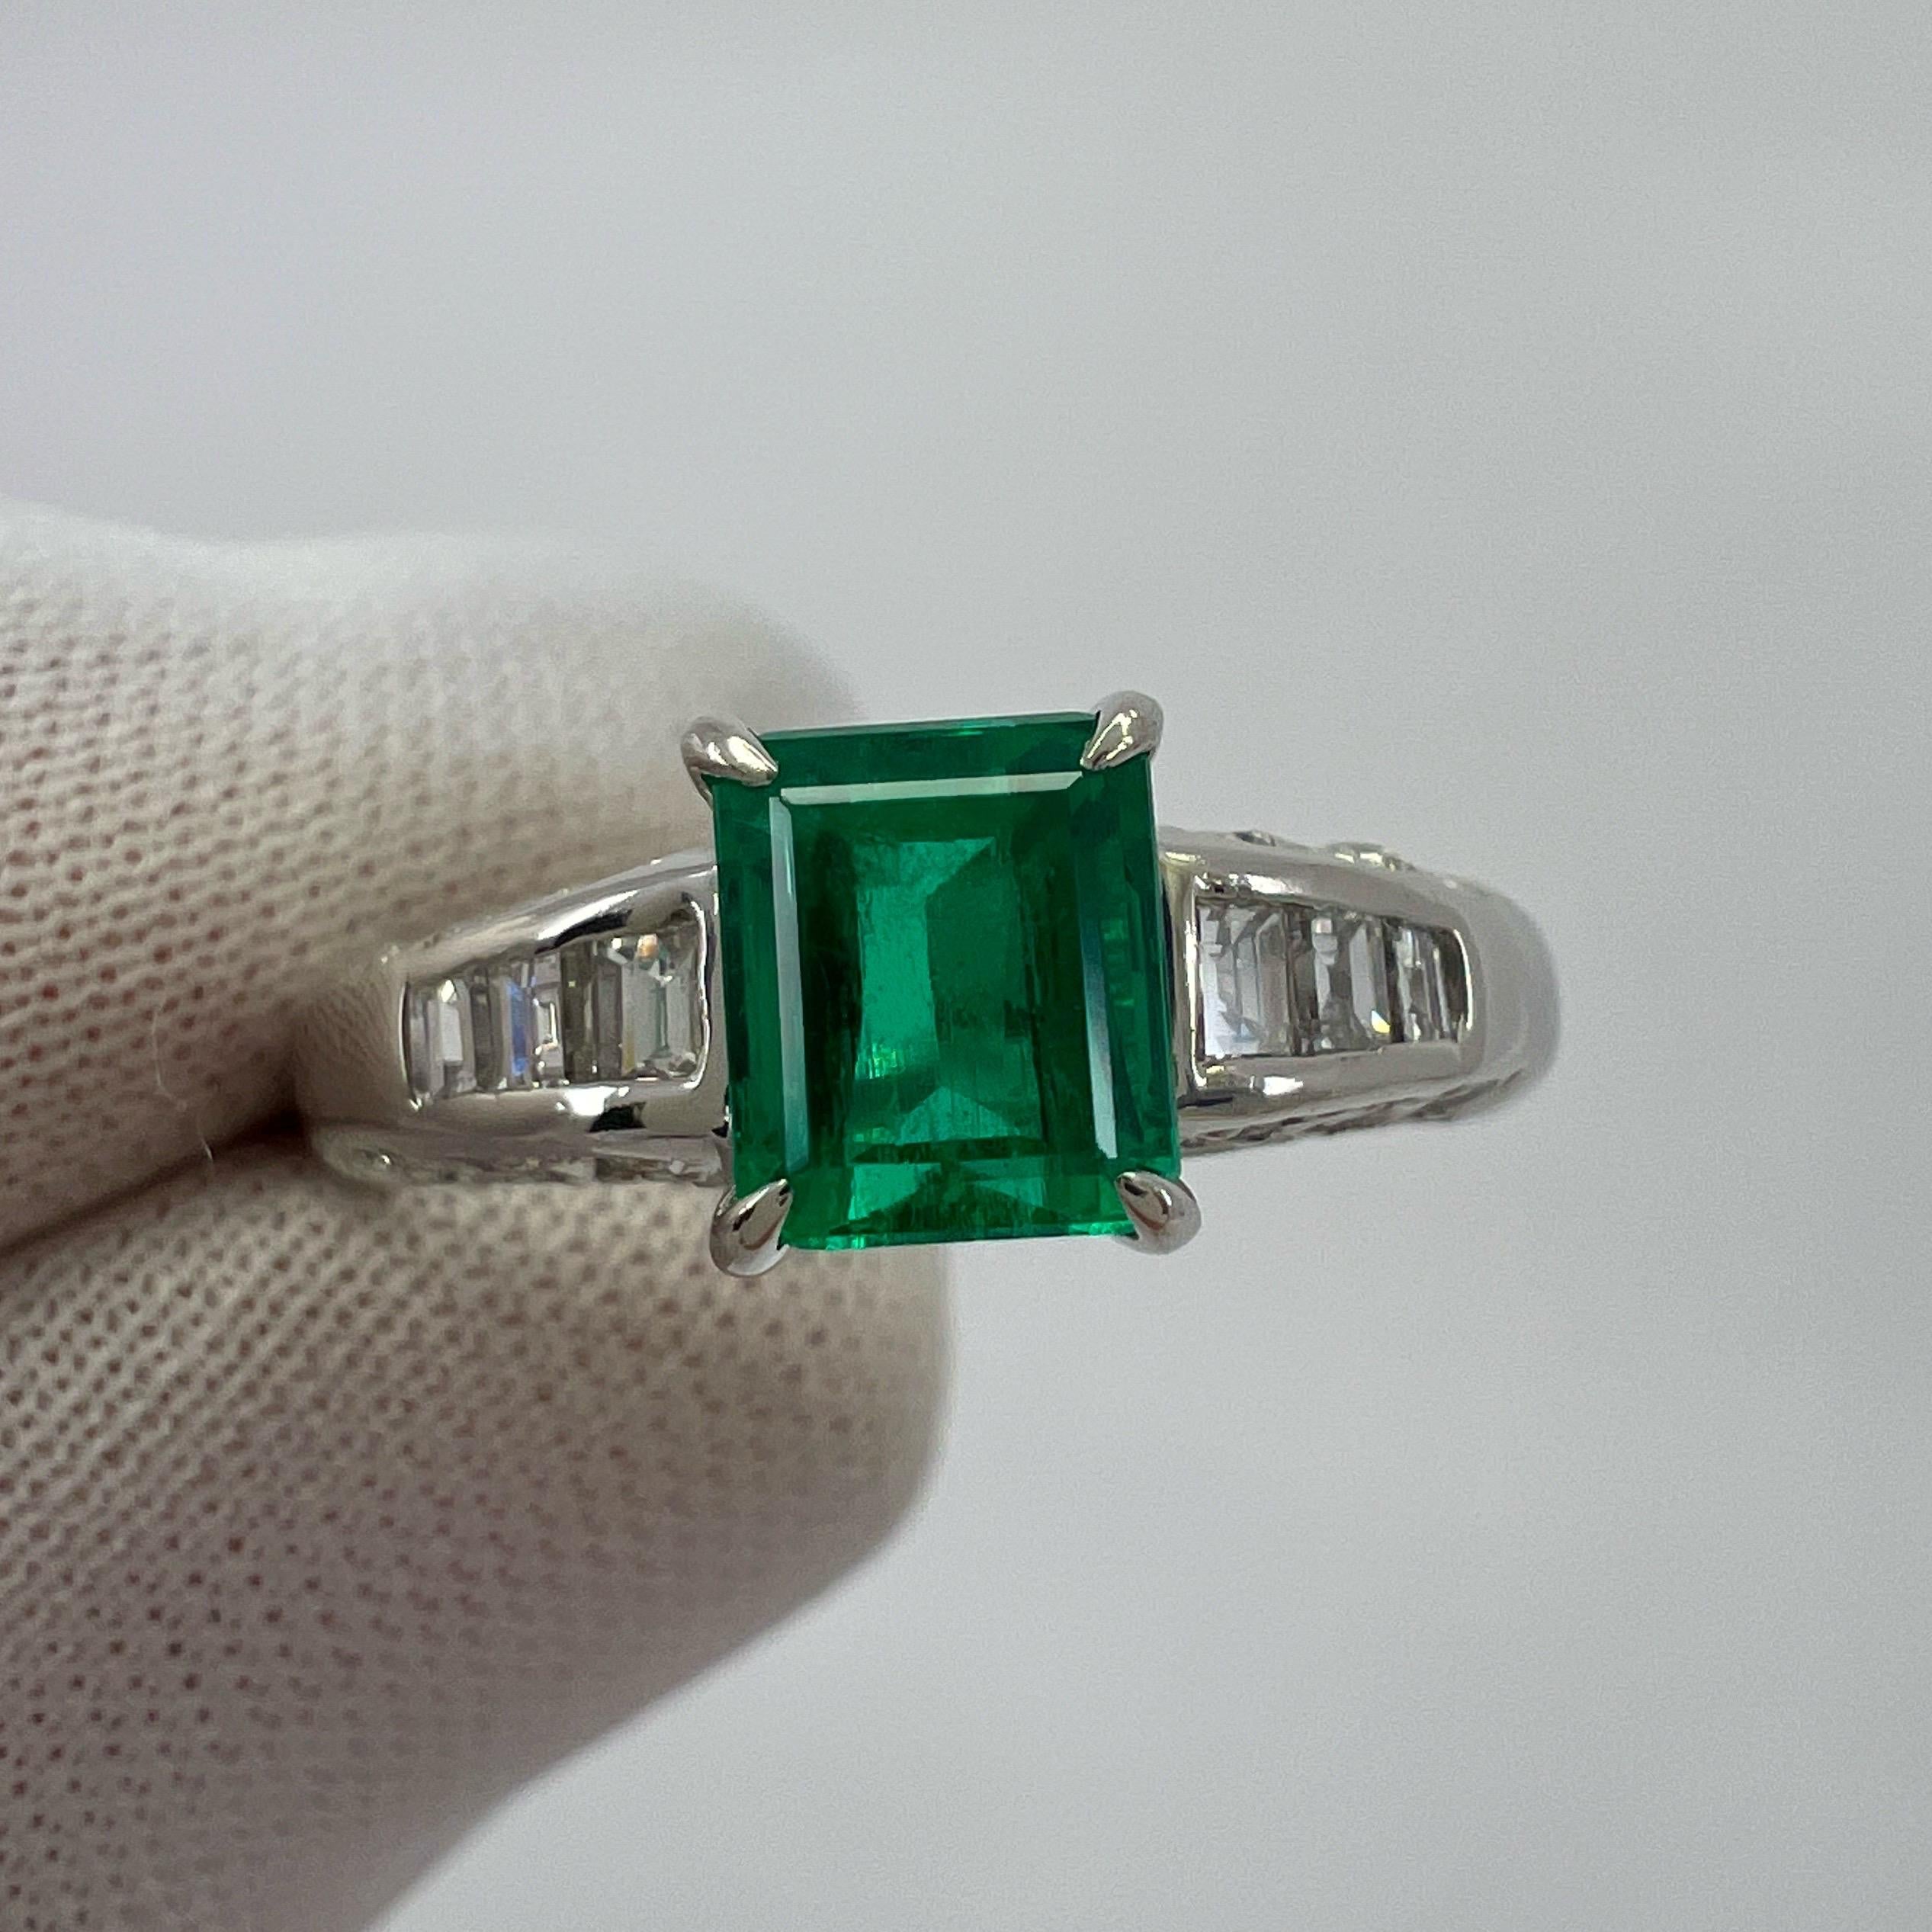 Bague solitaire en platine avec diamants et émeraude de Colombie d'un vert éclatant.

Poids total en carats 1,08. L'émeraude colombienne de 0,78 carat est d'une couleur vert vif et d'une excellente taille. Dimensions : 5,8 x 4,8 mm.
L'émeraude